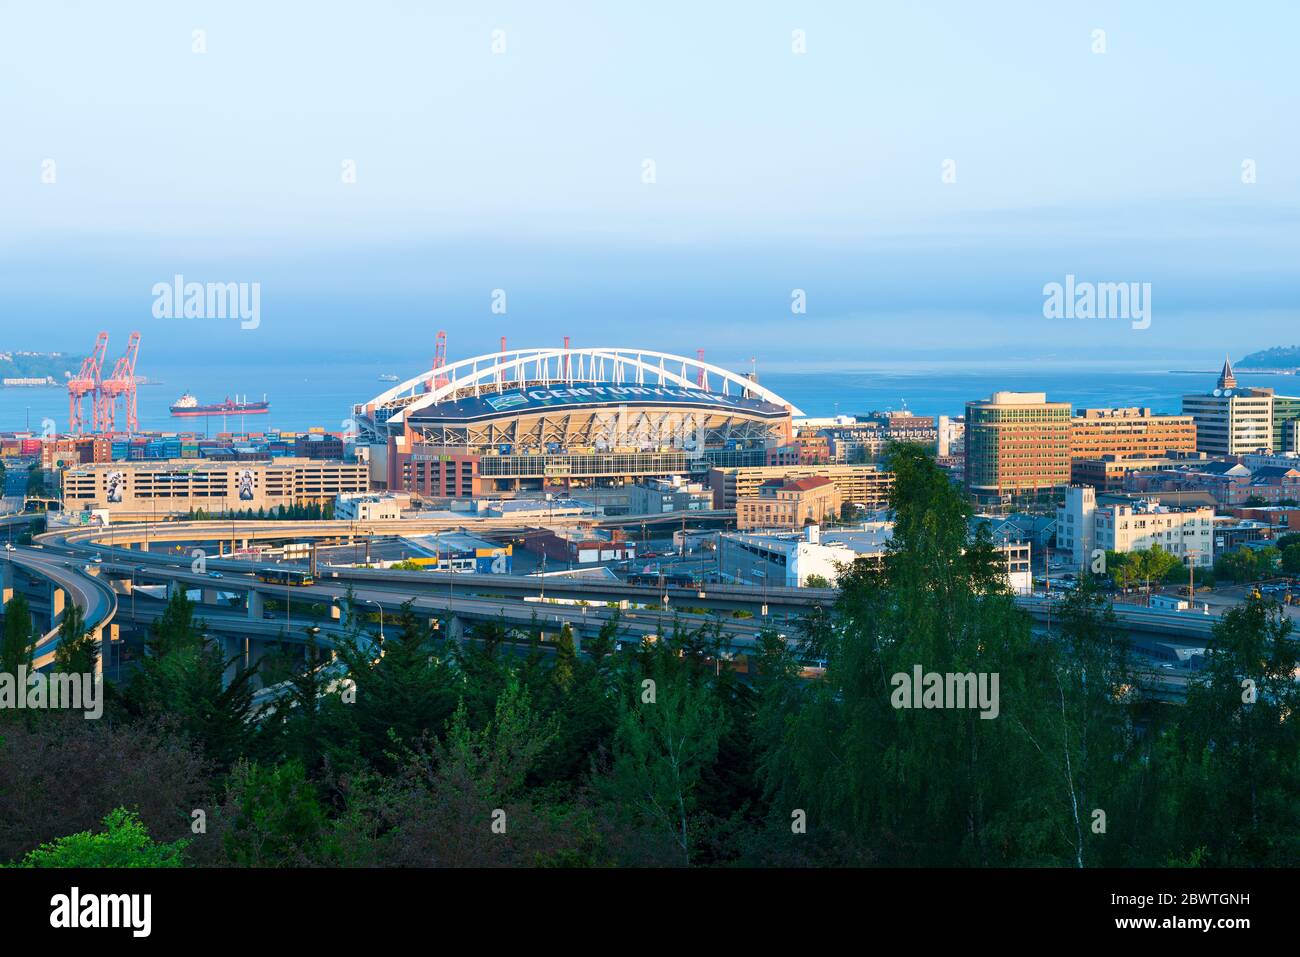 Quartier Pioneer Square, Seattle, Washington State, États-Unis - vue panoramique du quartier industriel avec Centurylink Field stadiu Banque D'Images